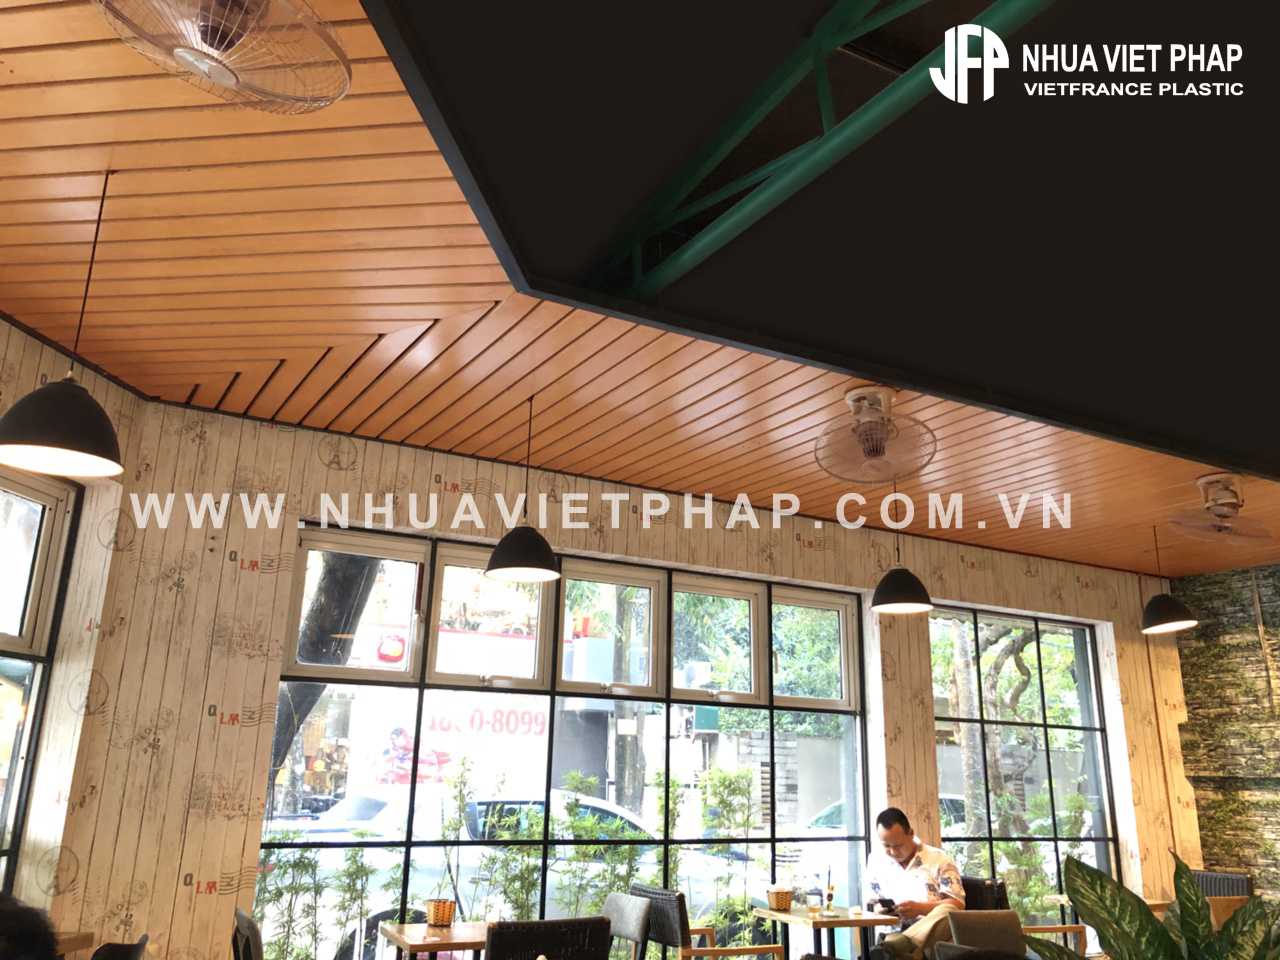 (Trang trí trần nhà với gỗ nhựa sinh thái WPVC - Nhựa Việt Pháp)